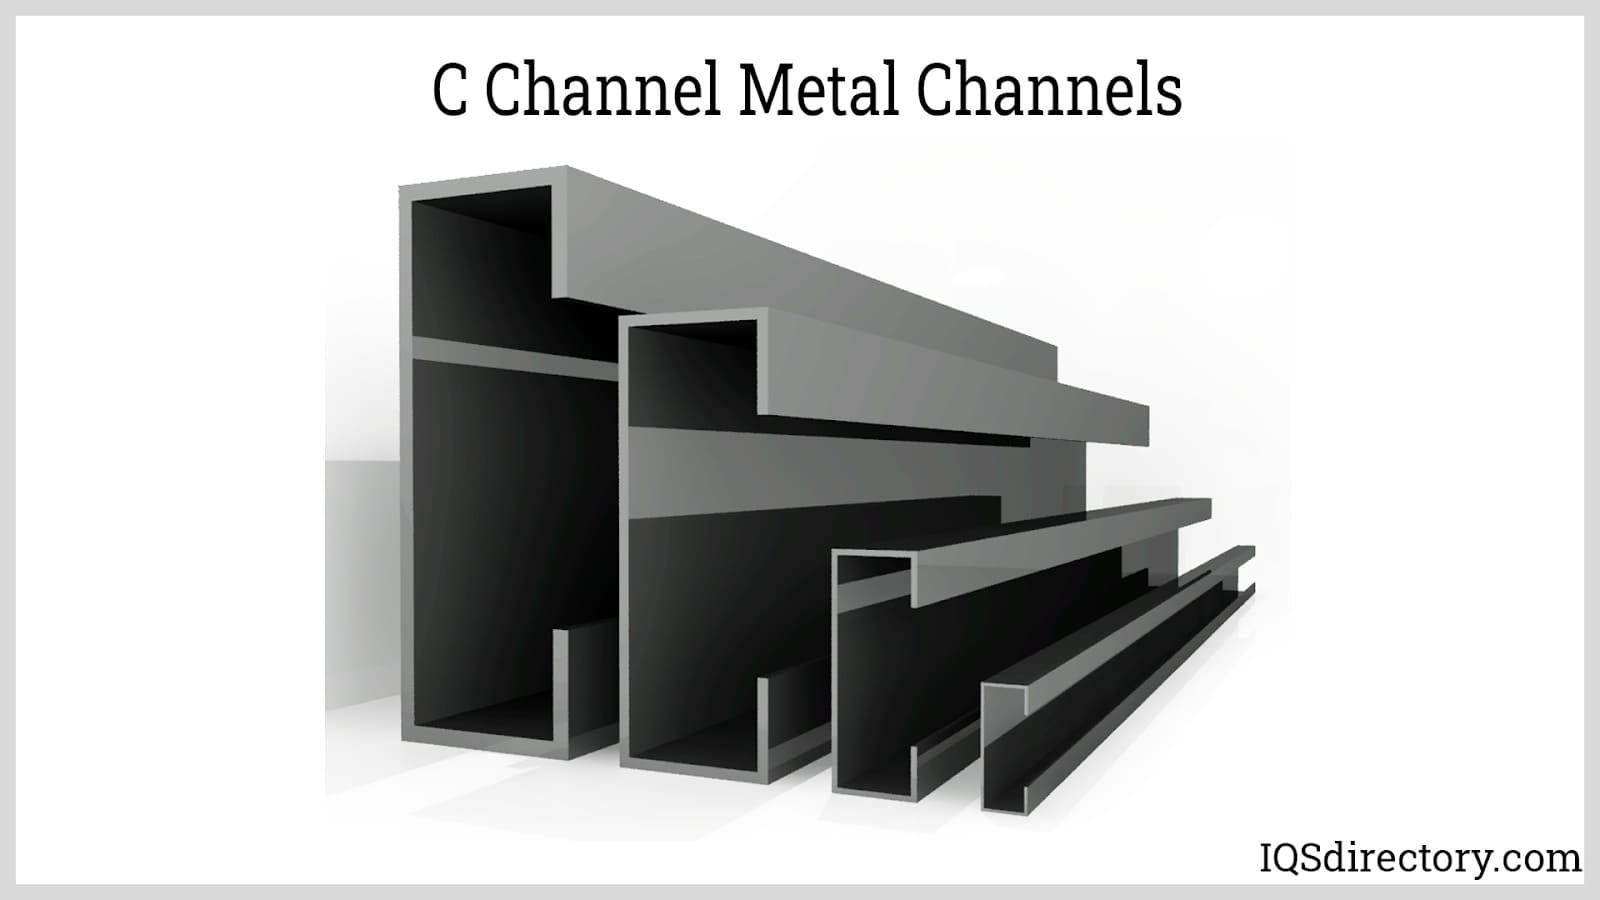 C Channel Metal Channels